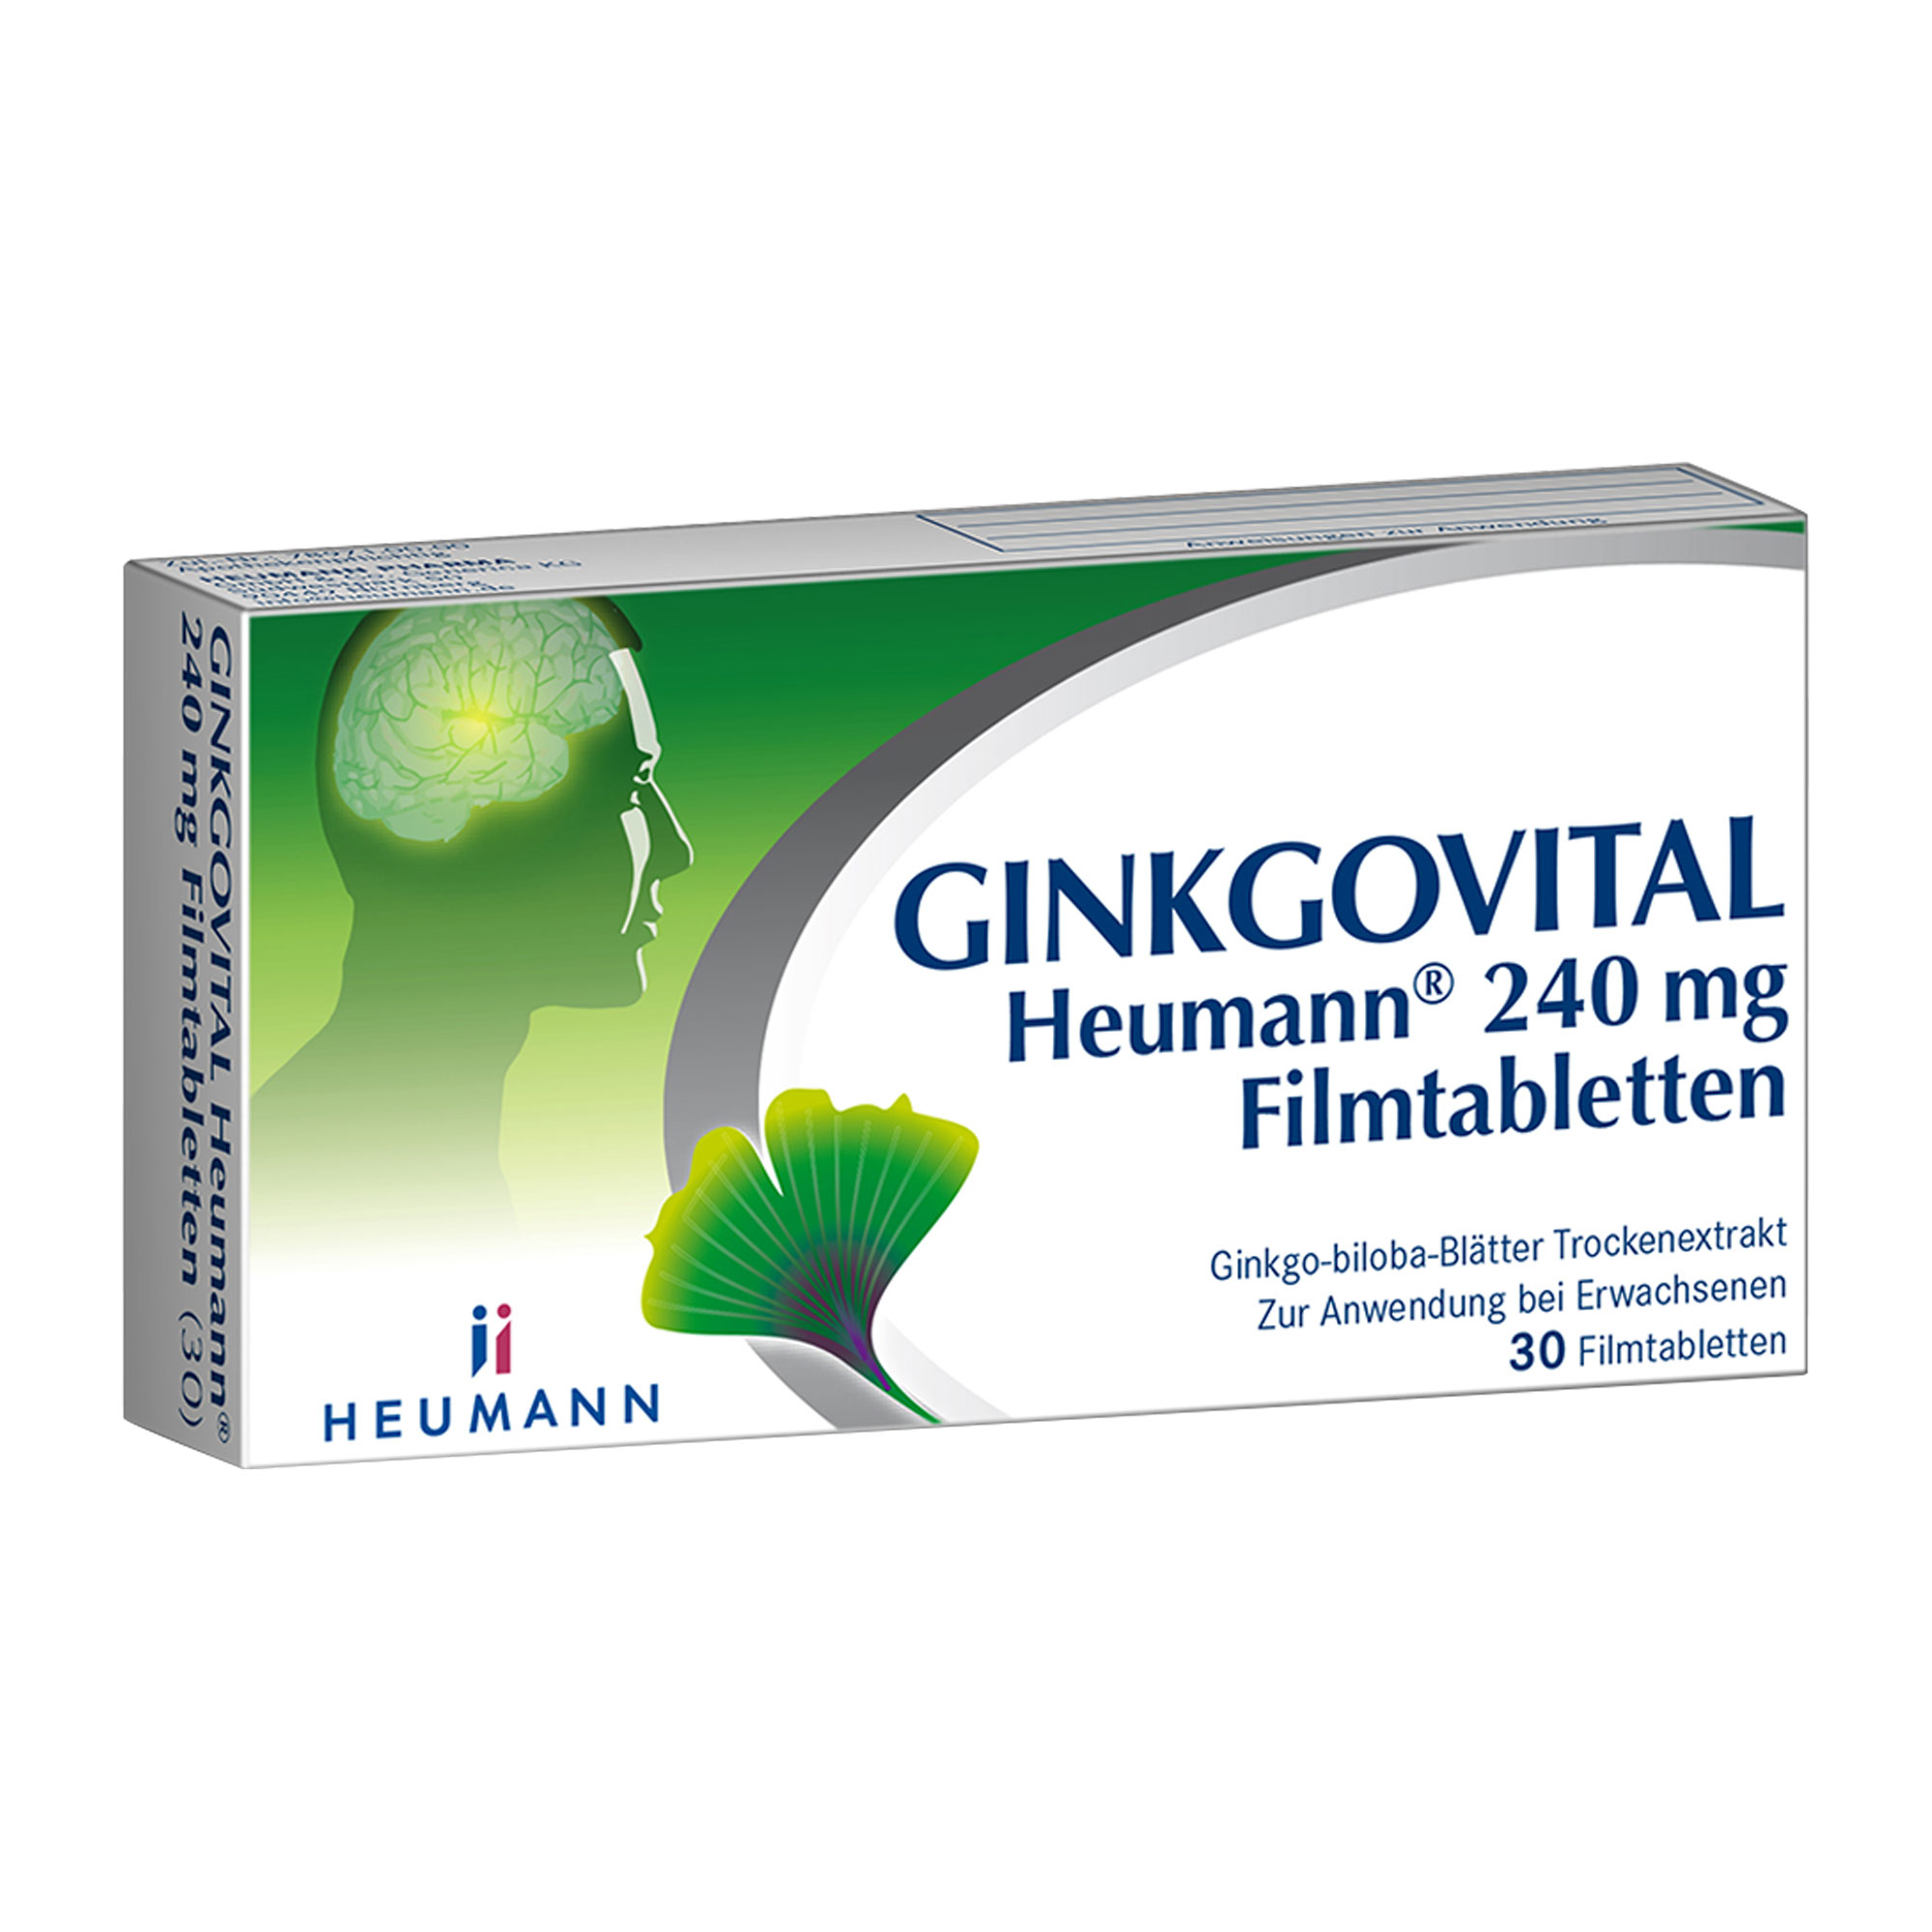 Pflanzliches Arzneimittel mit 240 mg Ginkgo-biloba-Blätter Trockenextrakt. Stärkt Gedächtnis und Konzentration.